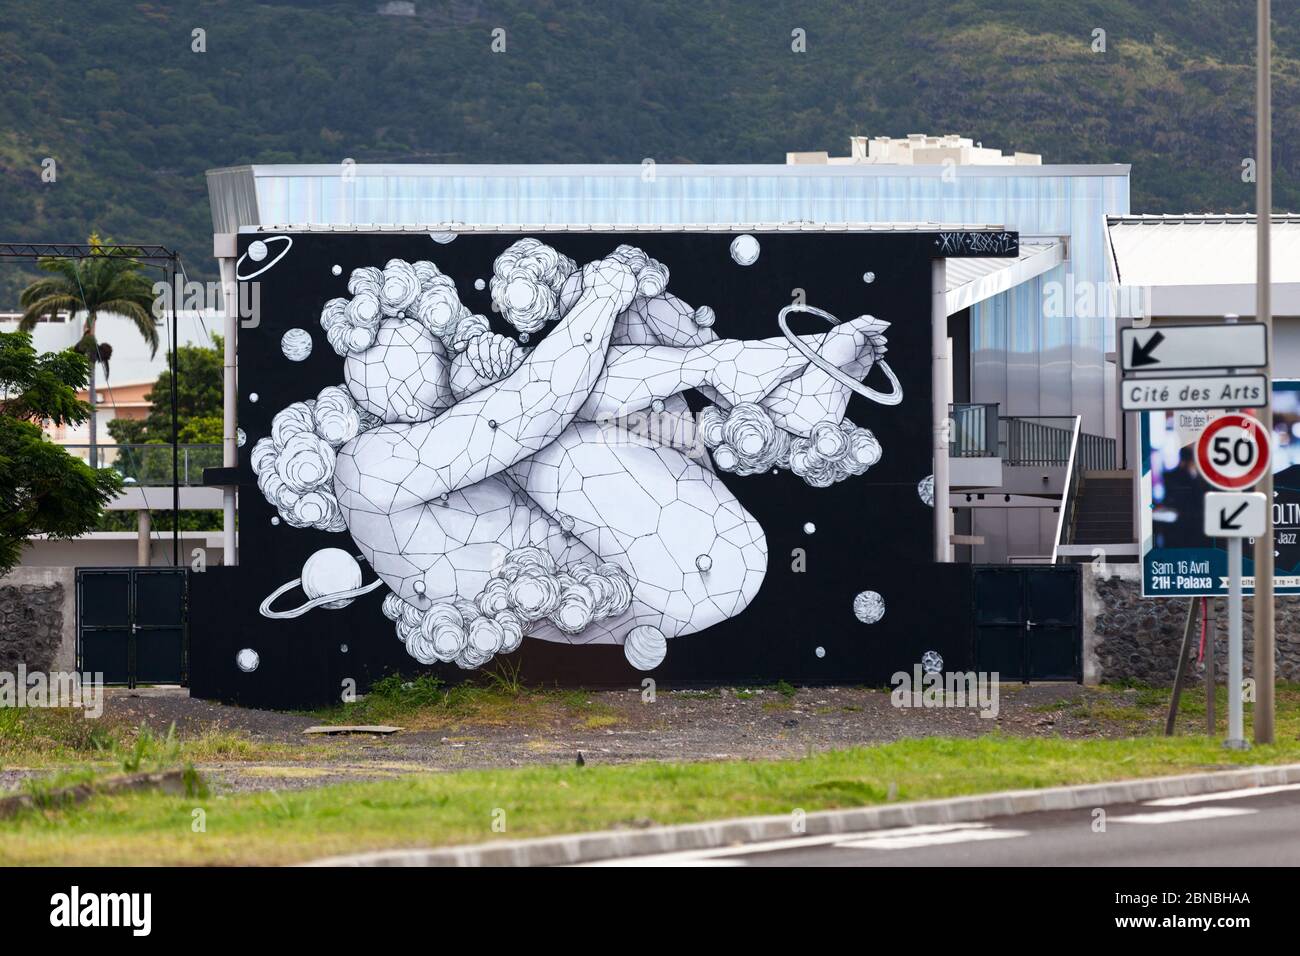 Saint-Denis, la Réunion - avril 10 2016 : fresque murale sur le mur de la Cité des Arts par Kid kréol & Boogie, deux artistes de rue célèbres de l'île de la Réunion W Banque D'Images